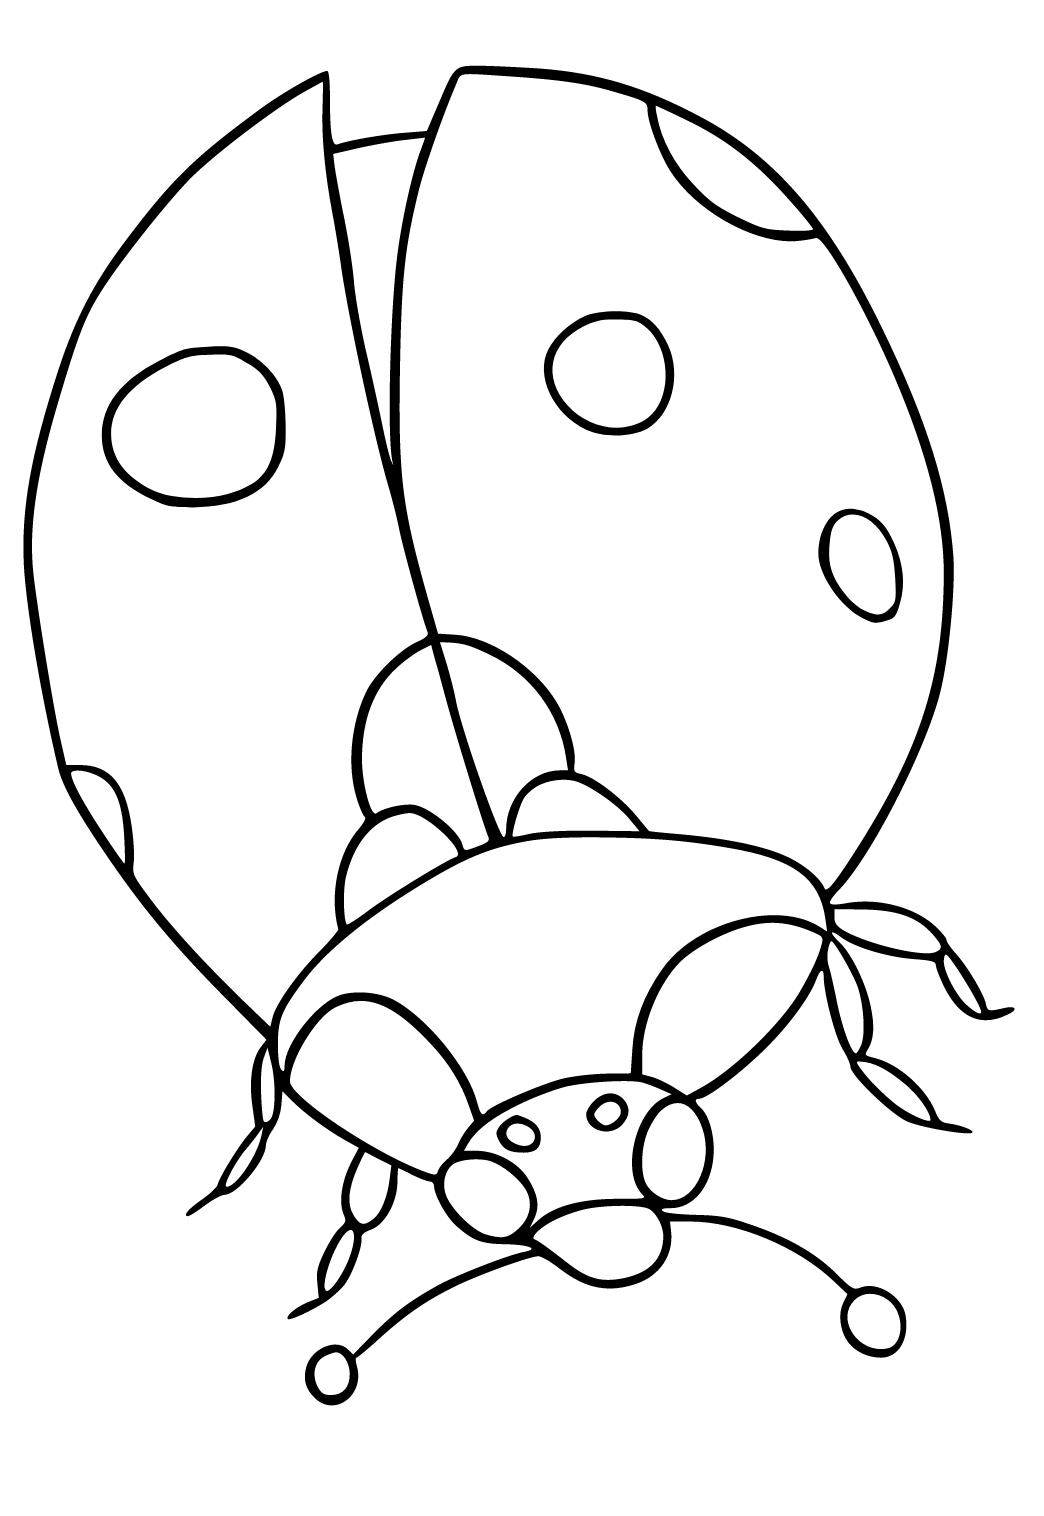 Free printable bug ladybug coloring page for adults and kids